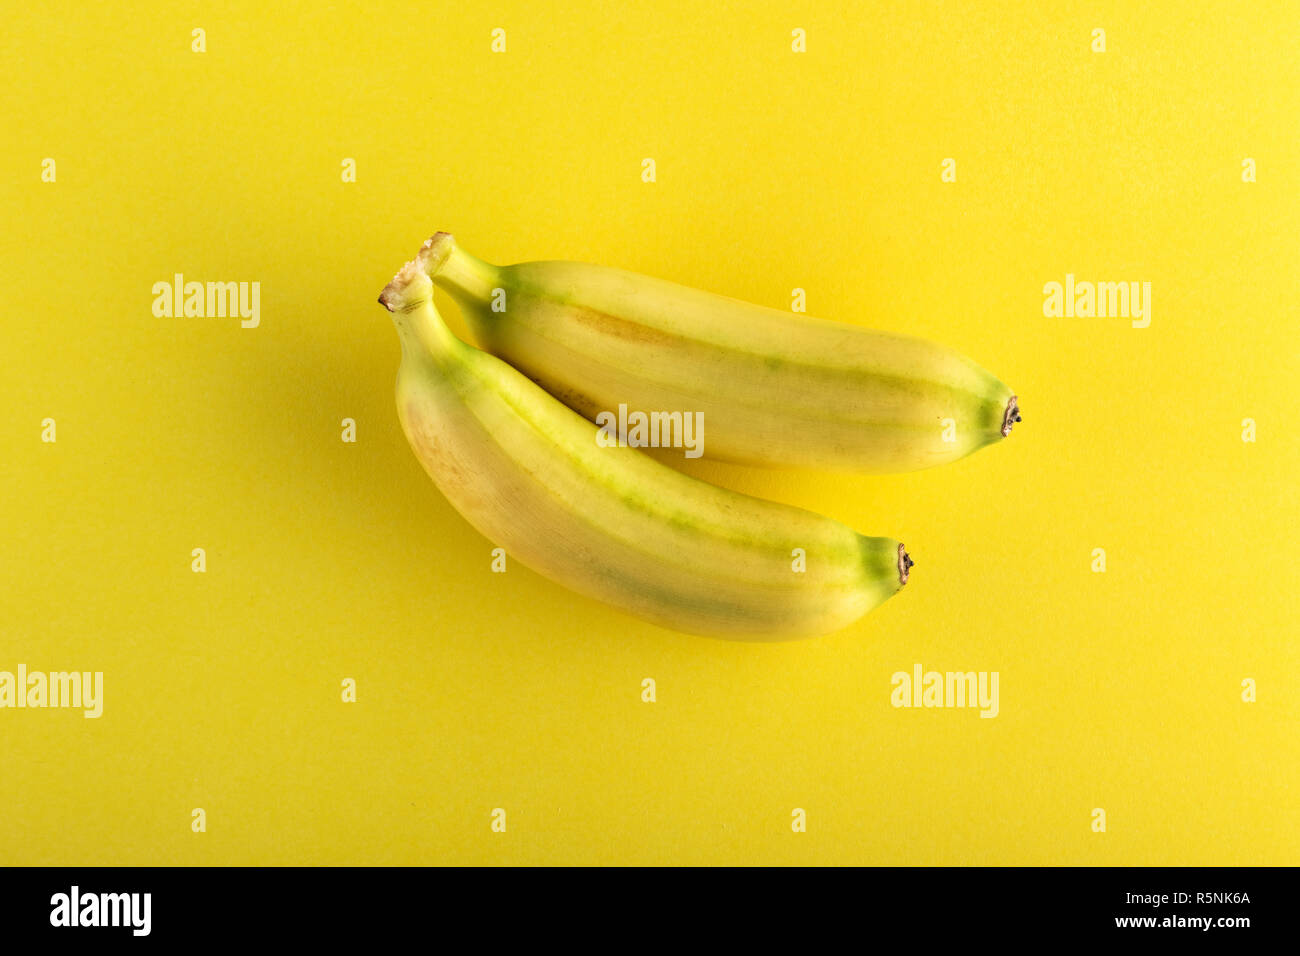 Zwei kleine ganze Bananen von oben gesehen auf gelbem Hintergrund Stockfoto